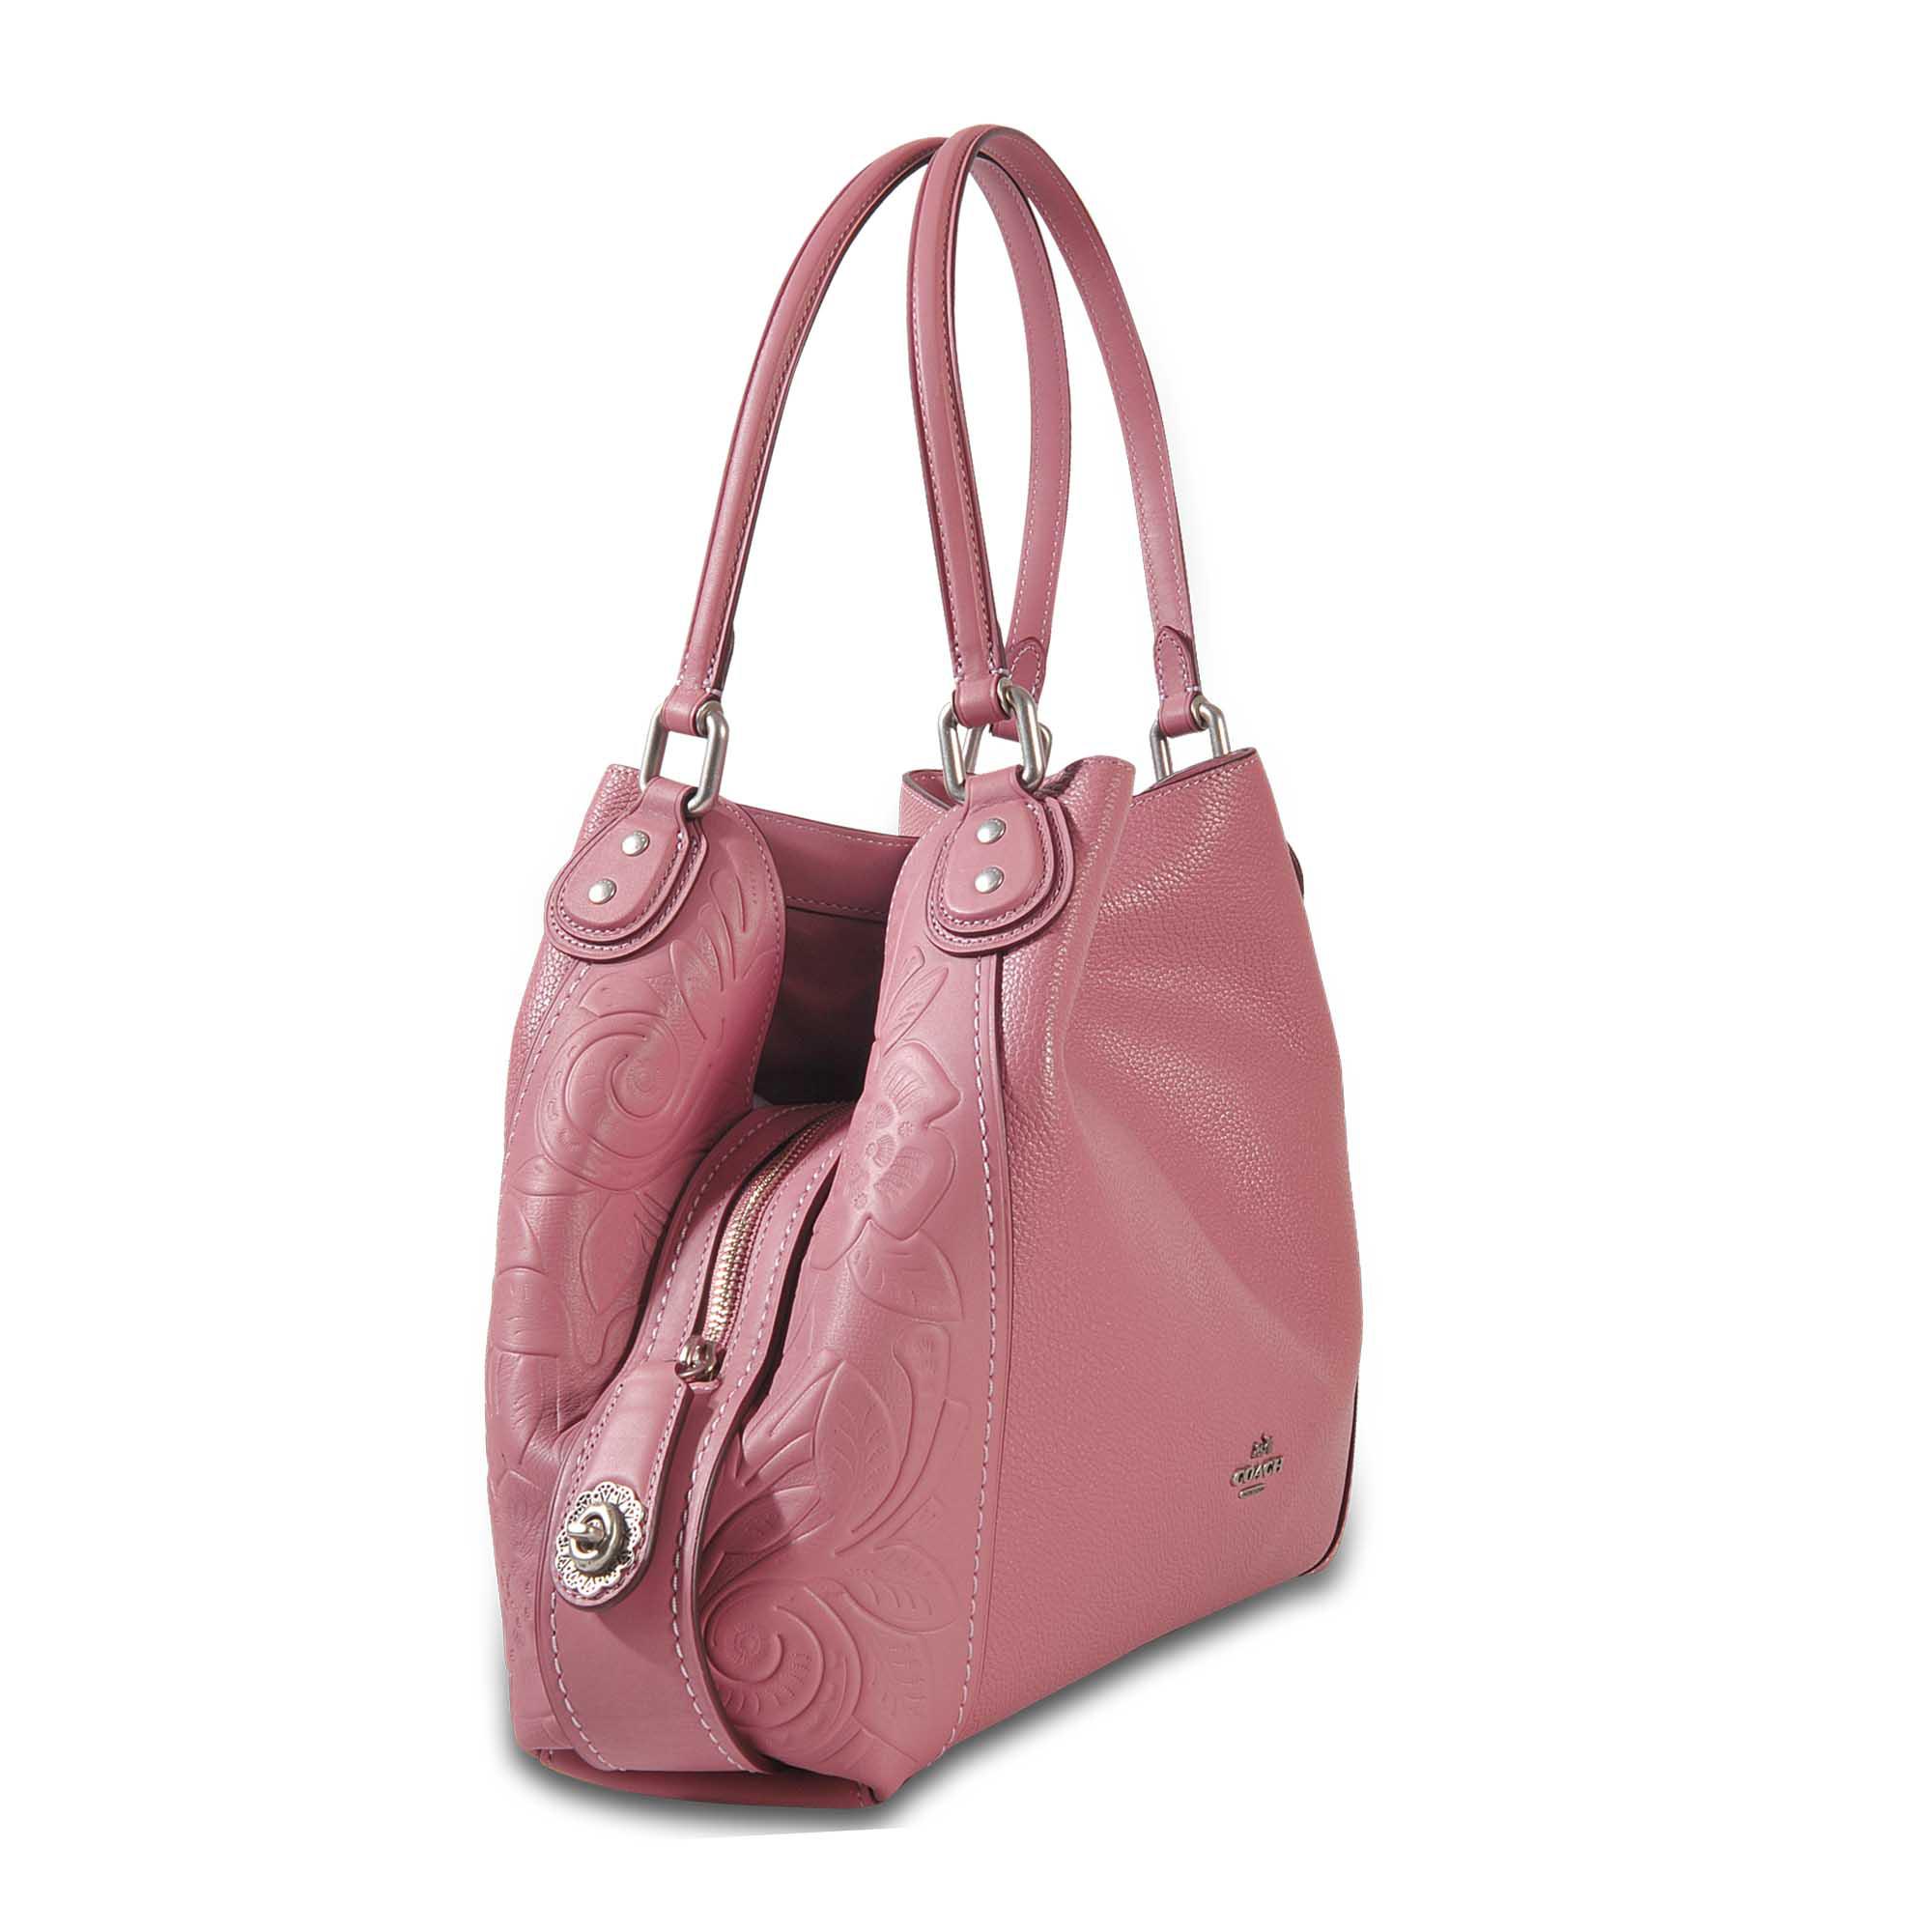 COACH Edie 31 Shoulder Bag in Pink - Lyst